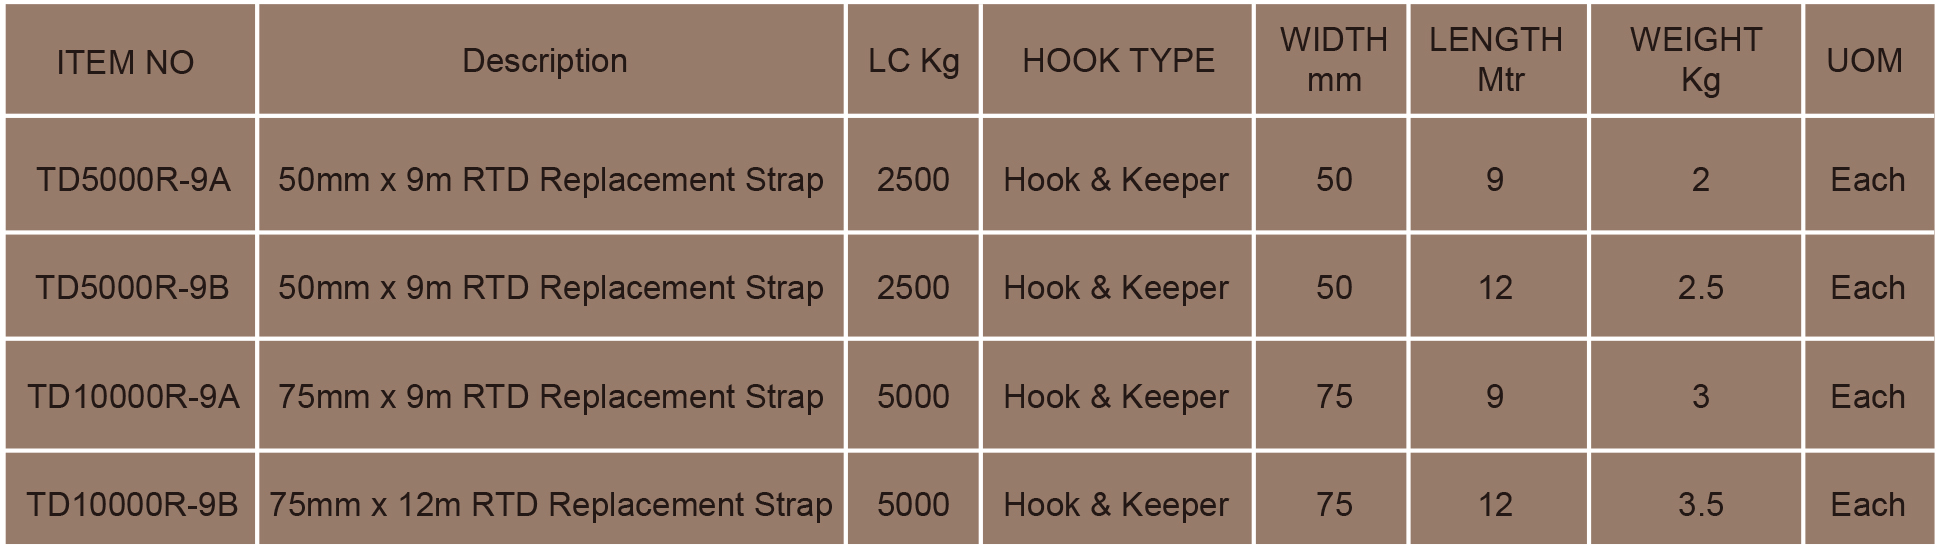 18- Сменные полиэфирные ремни с храповым механизмом по стандарту Австралии, 9 м, LC, 3000 кг.